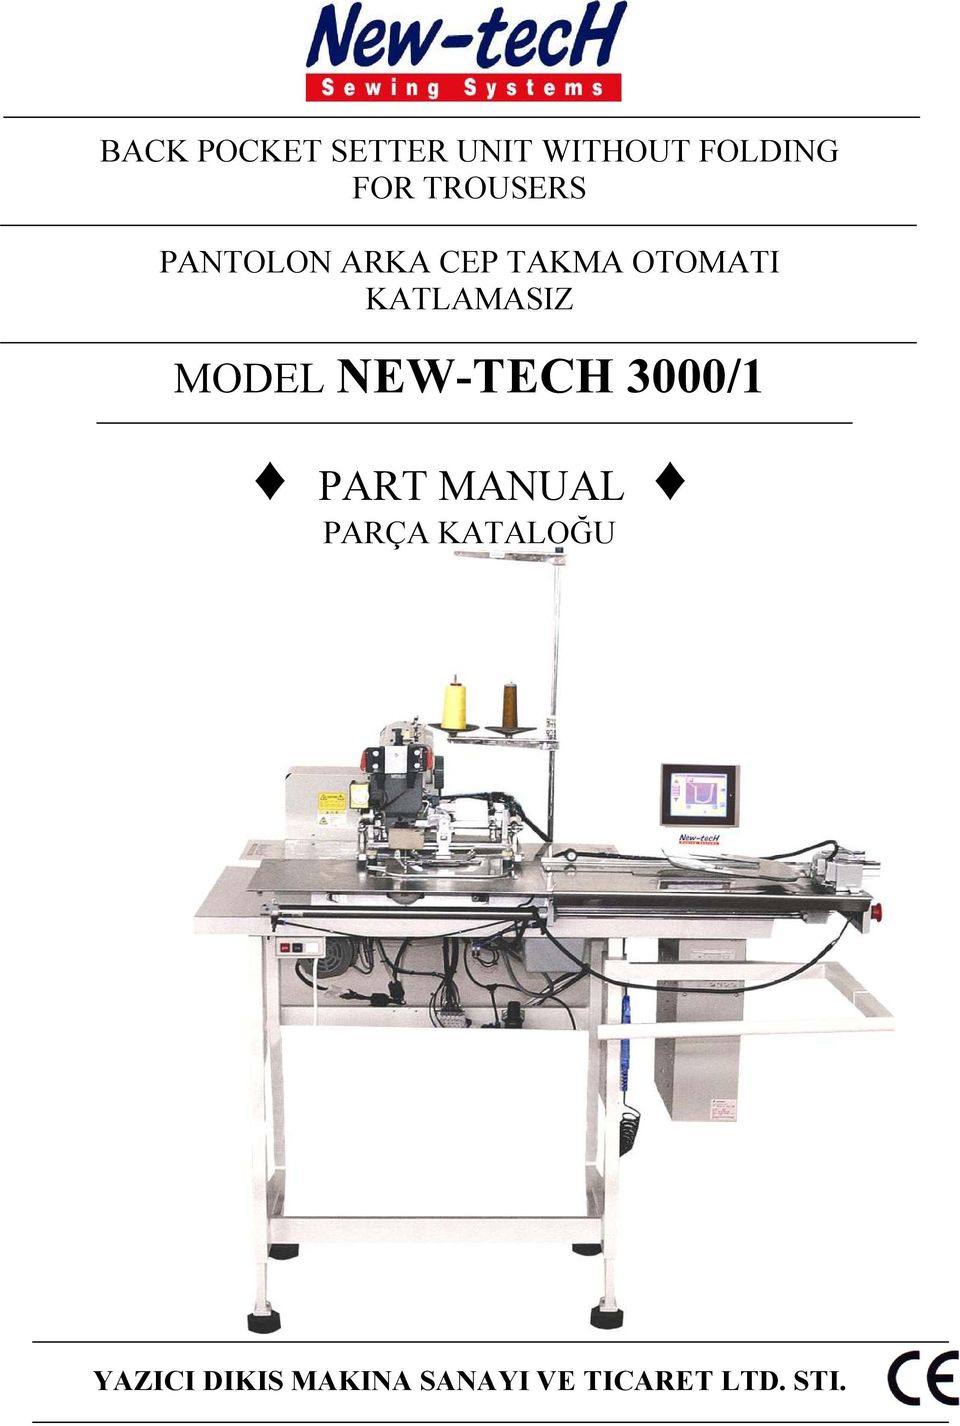 KATLAMASIZ MODEL NEW-TECH 3000/1 PART MANUAL